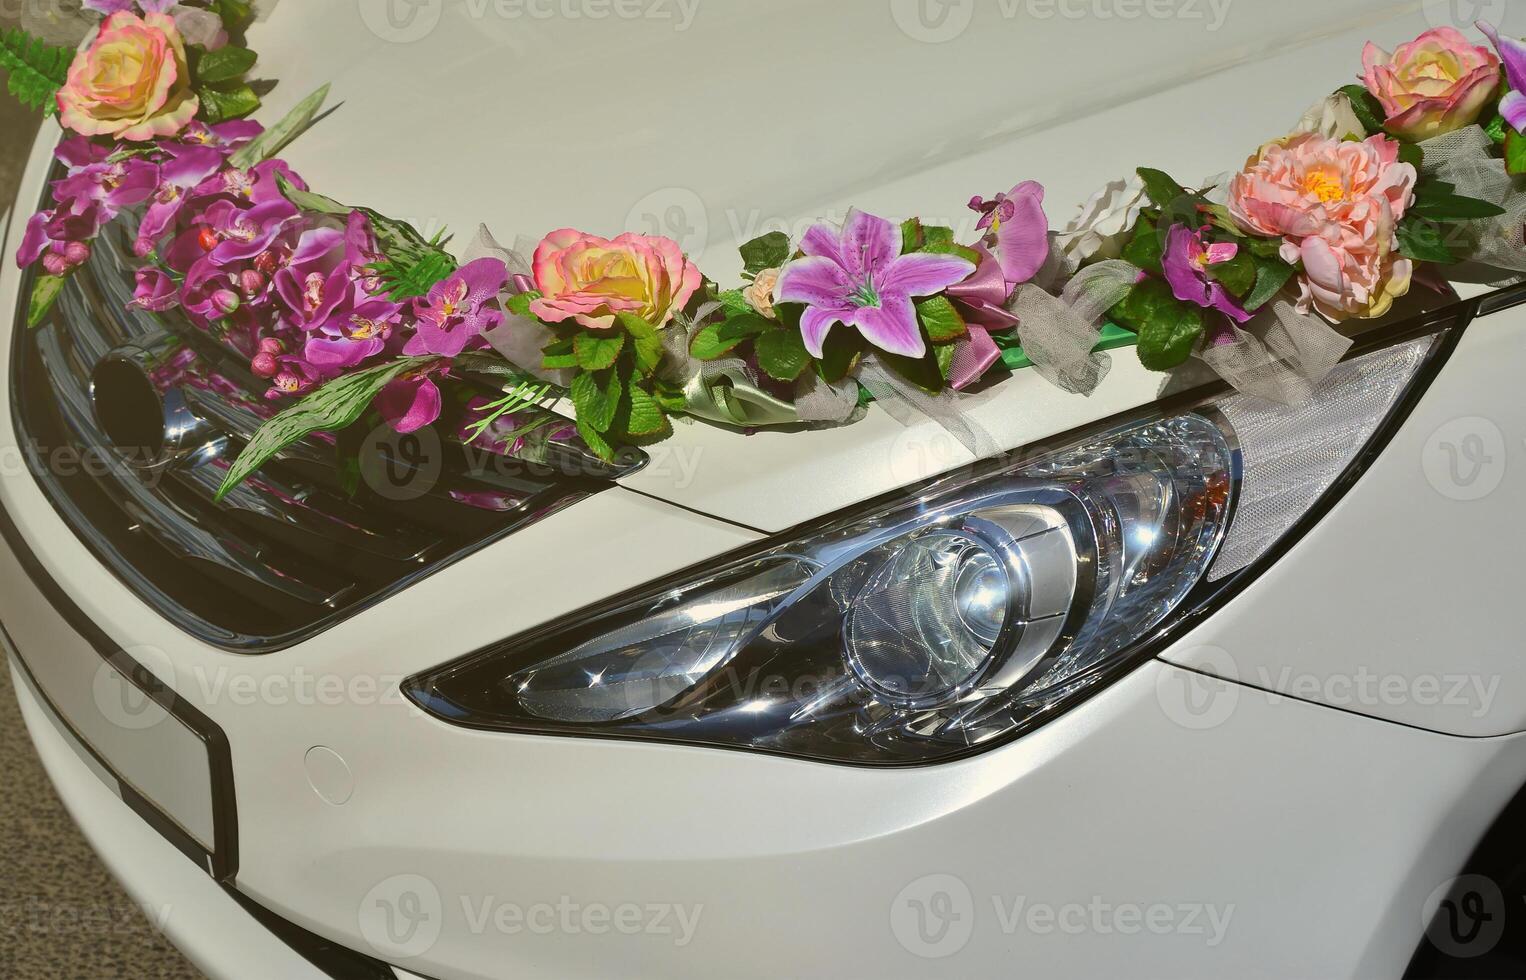 een gedetailleerd foto van de kap van de bruiloft auto, versierd met veel verschillend bloemen. de auto is bereid voor een bruiloft ceremonie